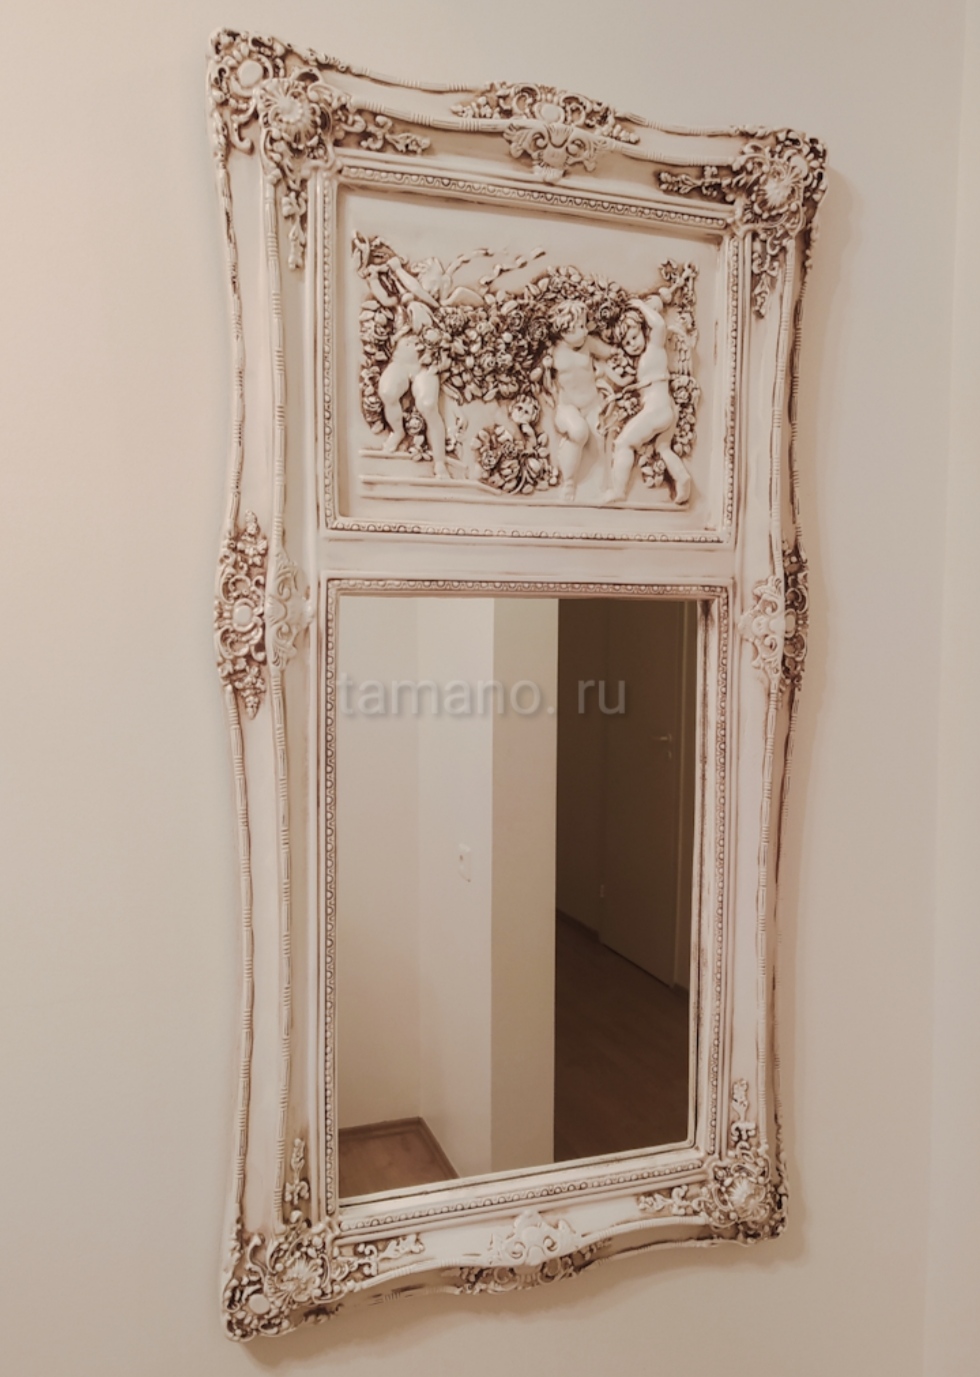 Купить стильное зеркало панно с барельефом в виде ангелочков Анжело прованс.jpg